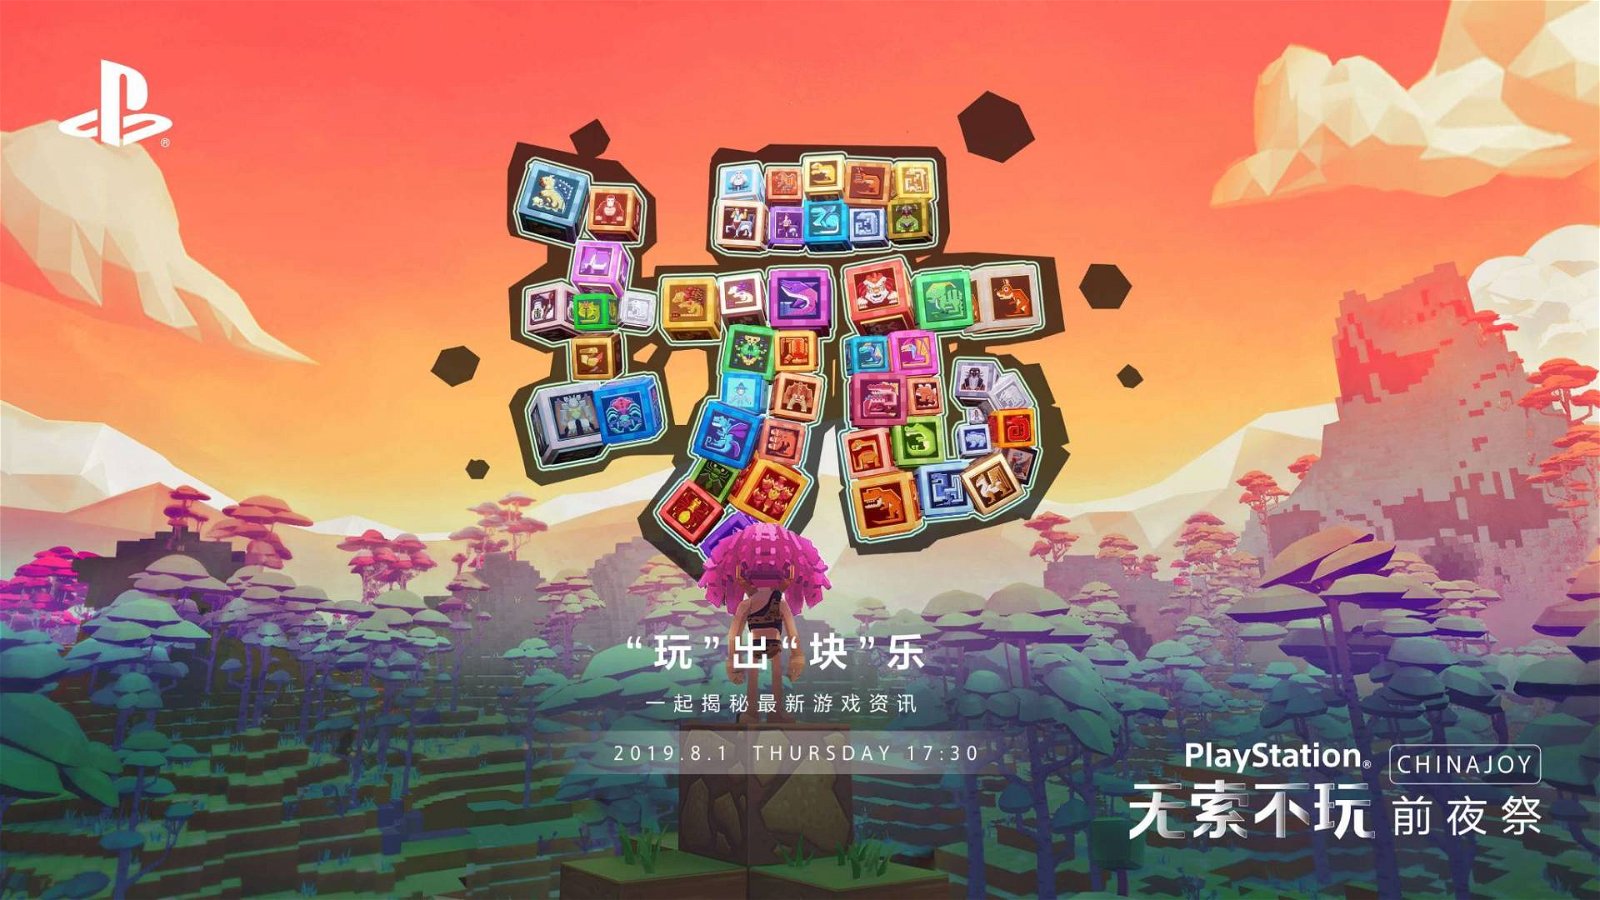 Immagine di PlayStation ChinaJoy 2019: svelati data e orario della conferenza